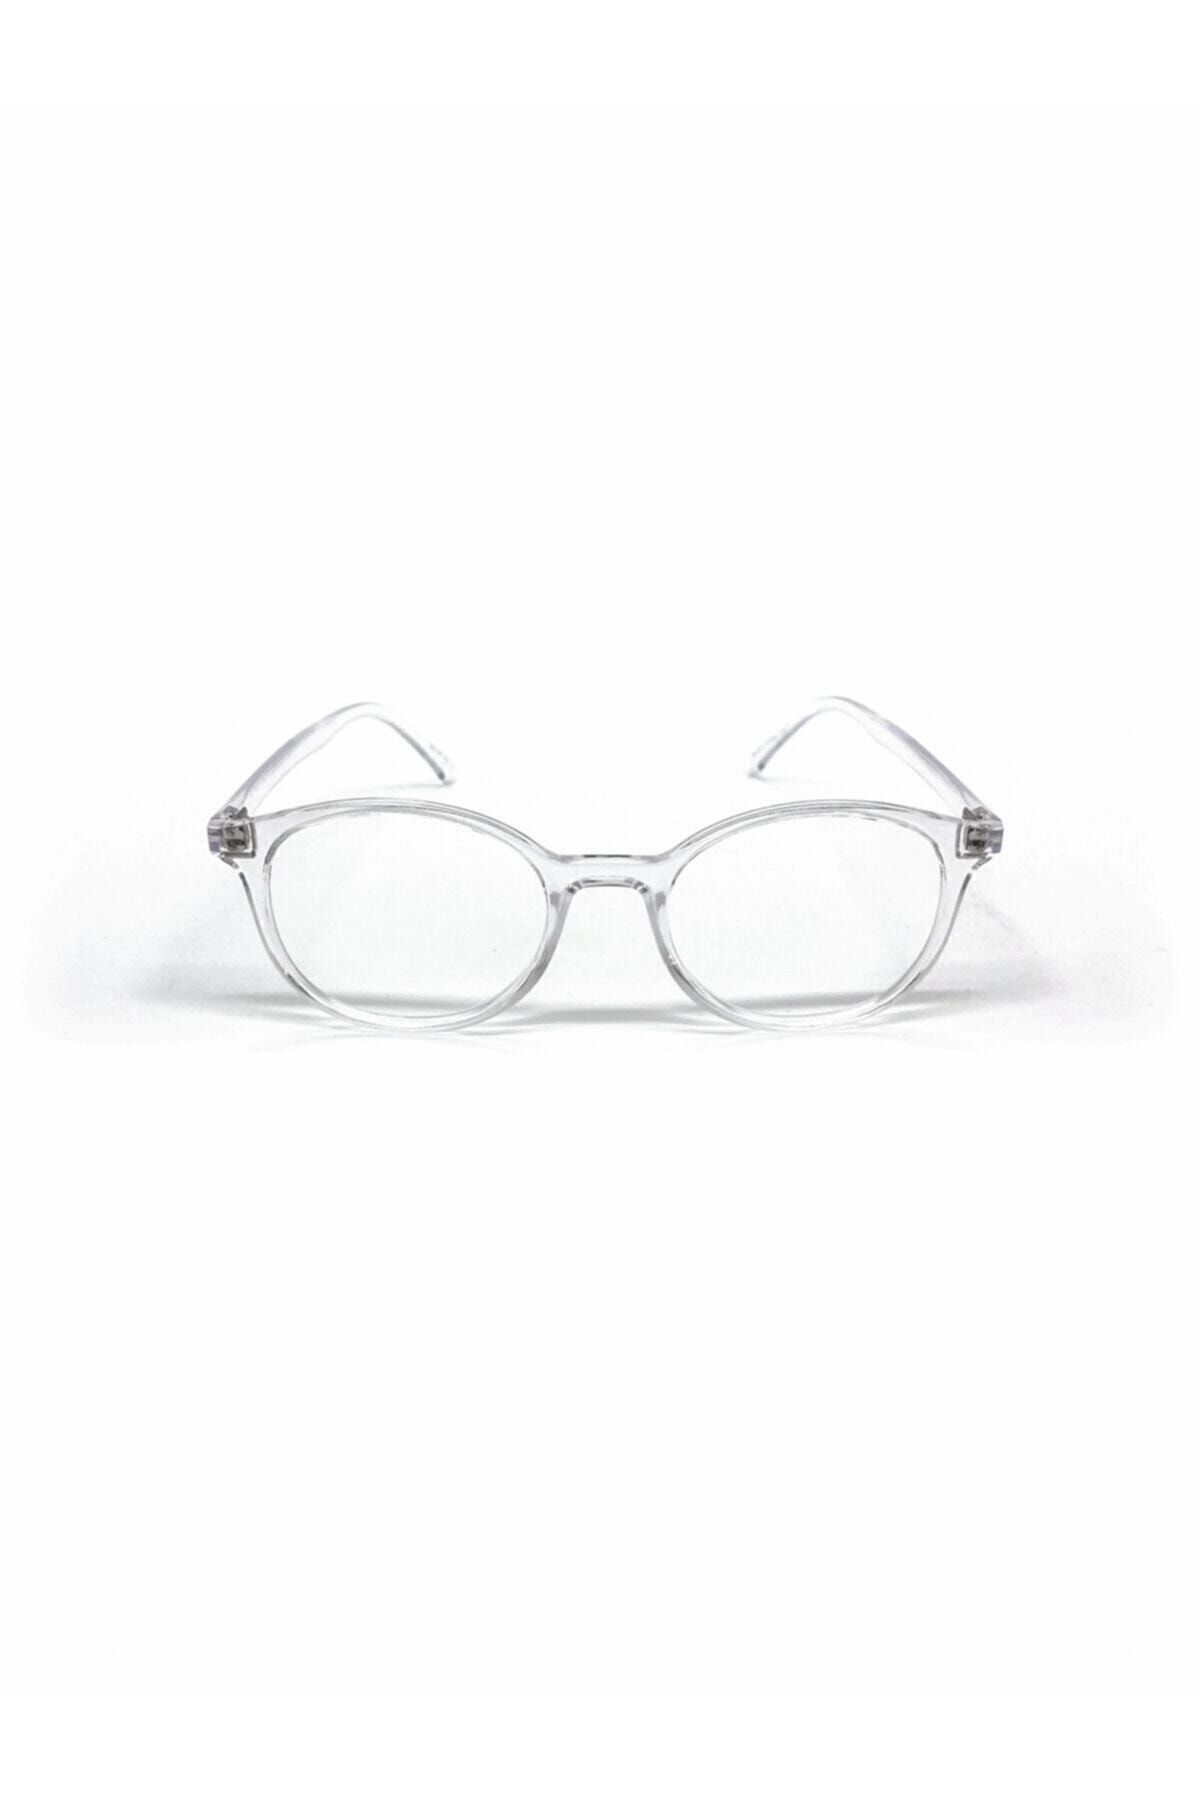 UBK Eyewear Ubk Numarasız Dinlendirici Mavi Işık Engelleme Gözlük Bilgisayar Gözlükleri Uv400 Koruma